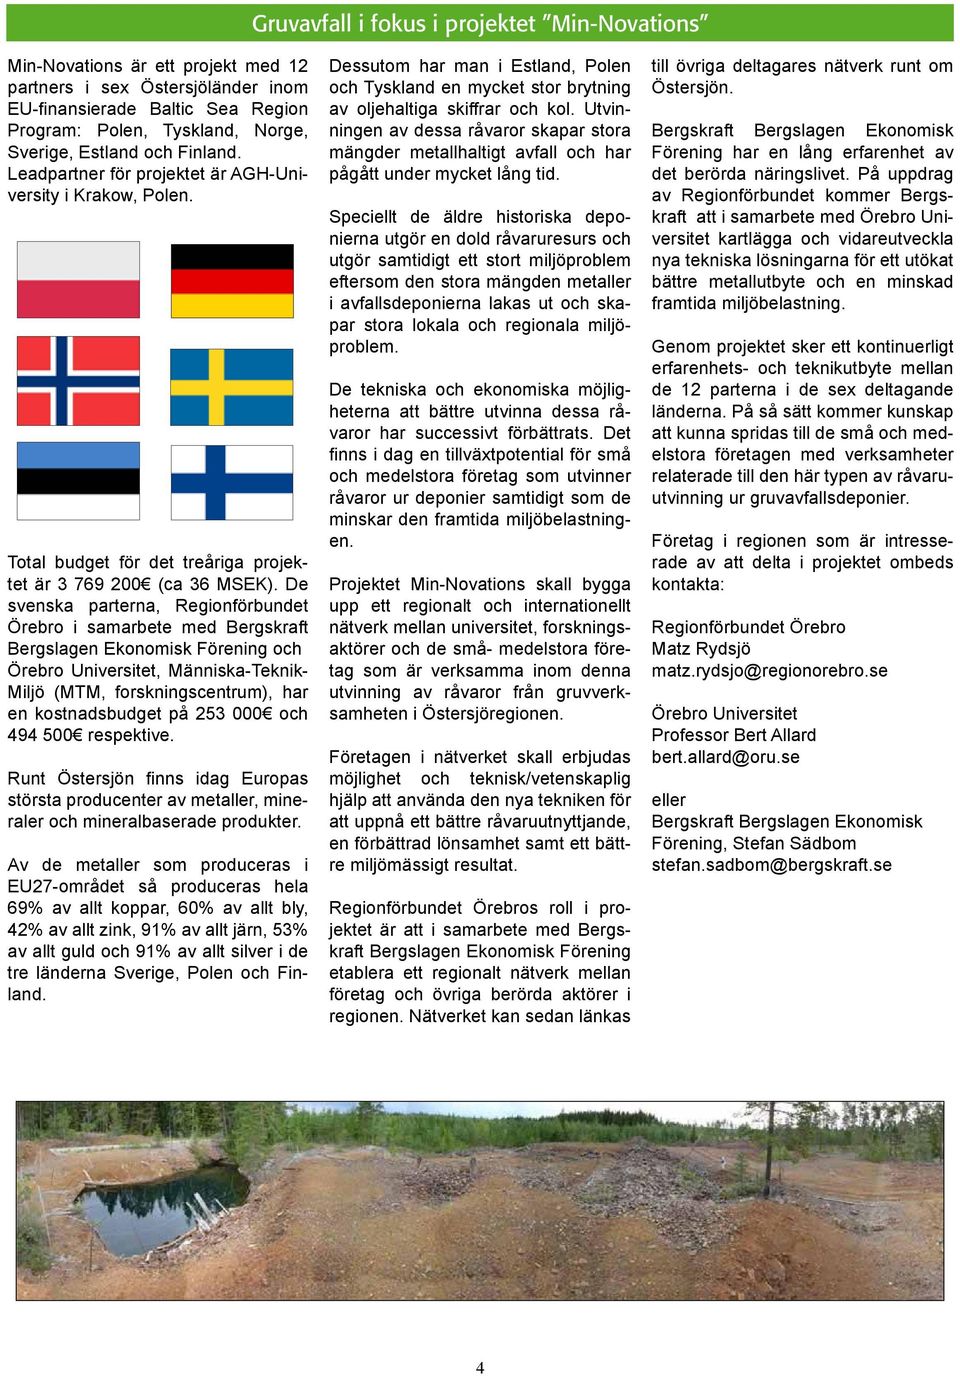 De svenska parterna, Regionförbundet Örebro i samarbete med Bergskraft Bergslagen Ekonomisk Förening och Örebro Universitet, Människa-Teknik- Miljö (MTM, forskningscentrum), har en kostnadsbudget på